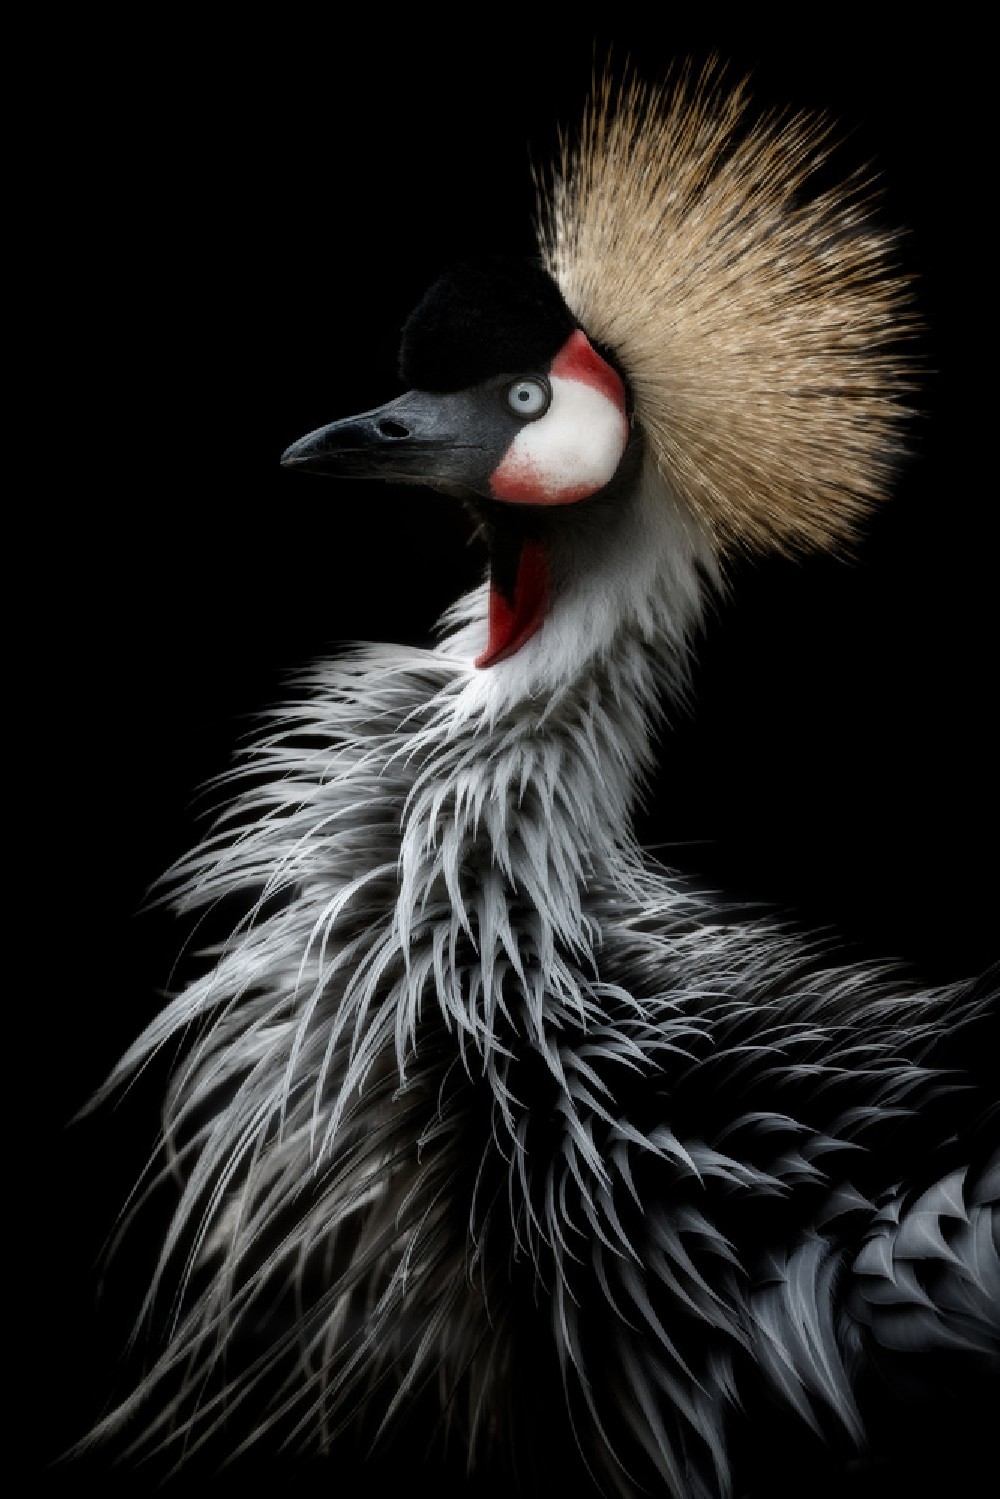 crowned-crane-s-portrait-poster